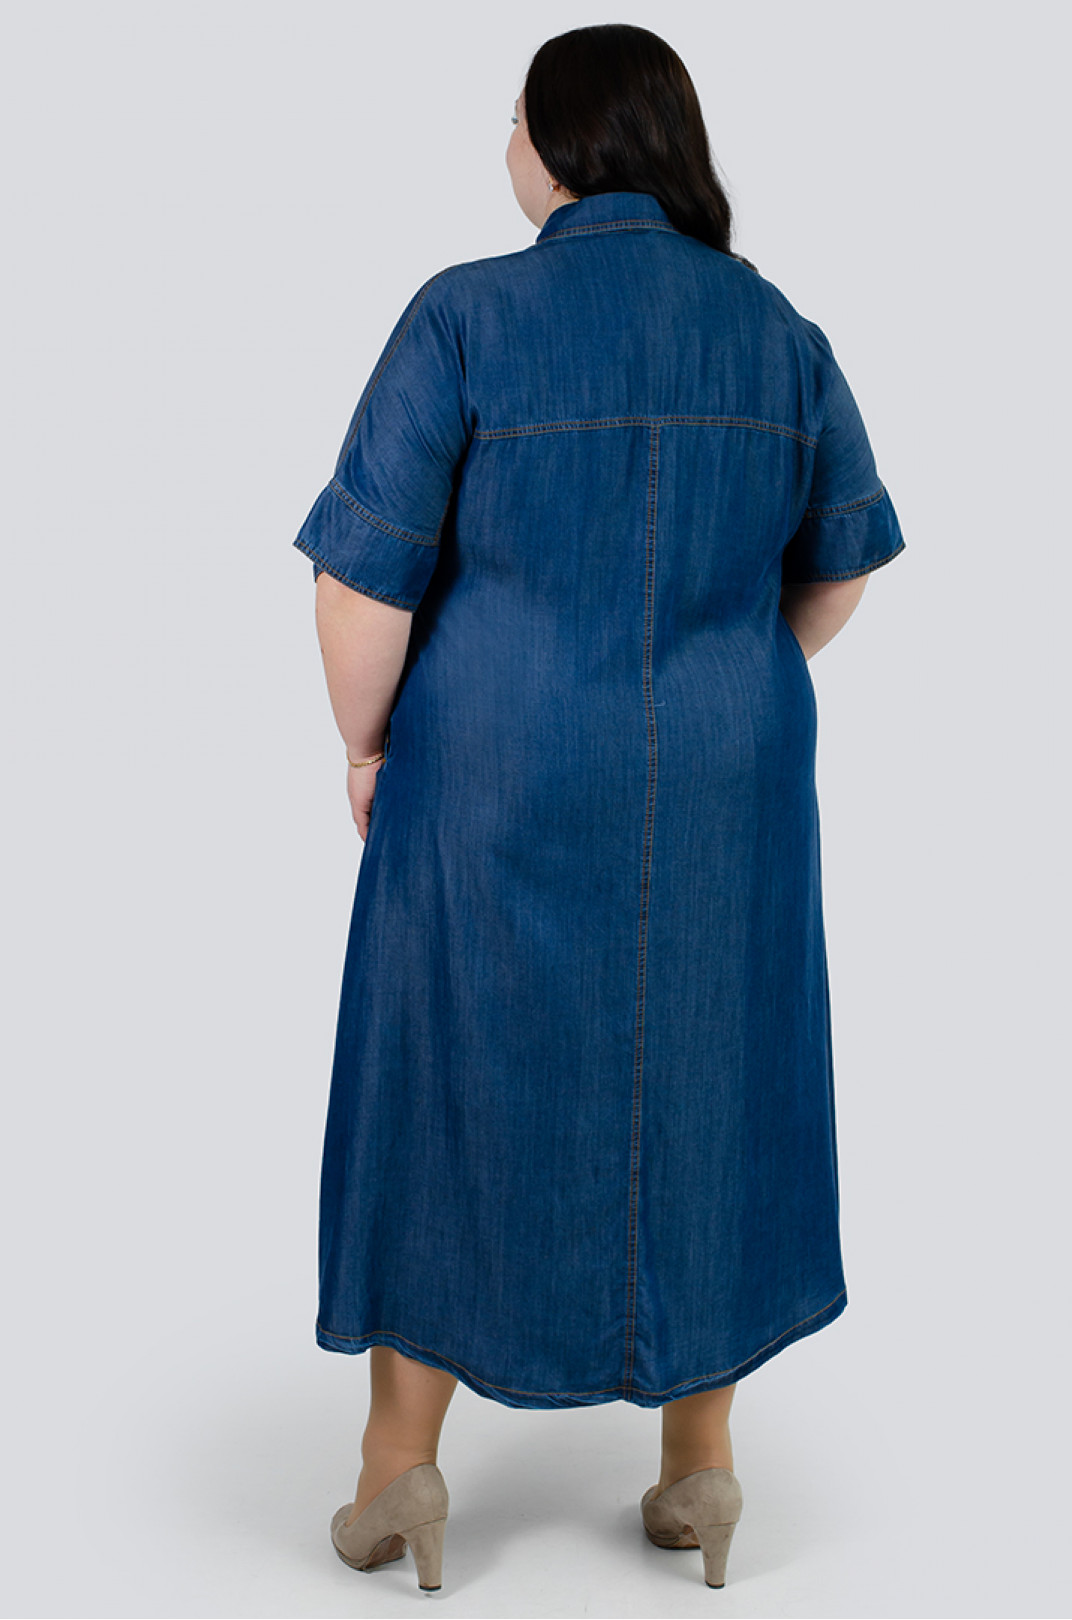 Джинсовое платье макси больших размеров